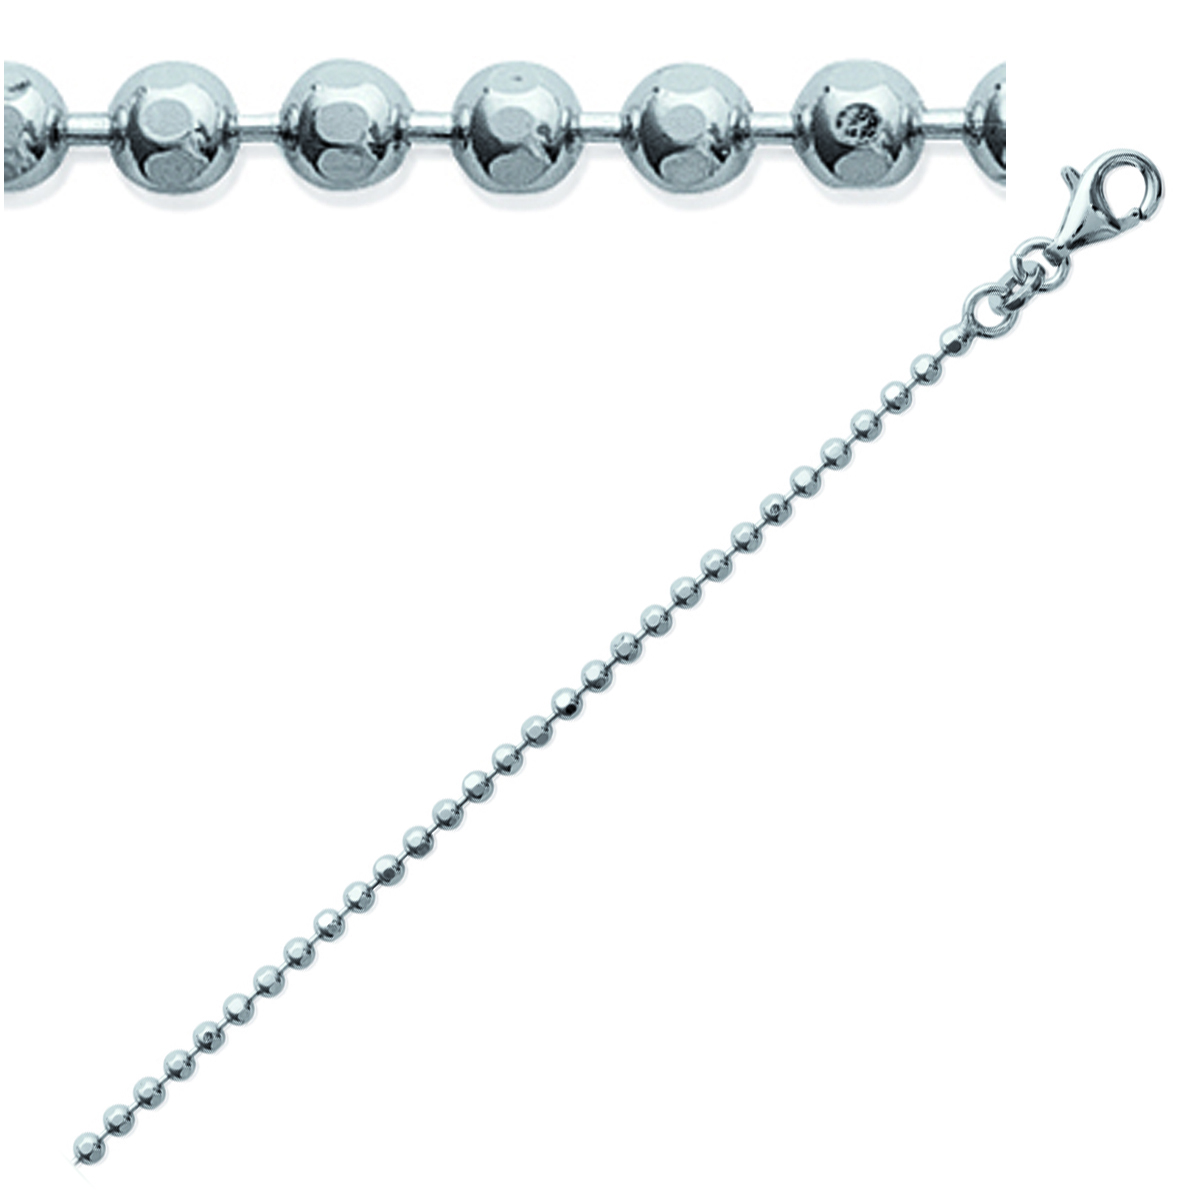 Chaine Argent \'Micro-Billes\' argenté (rhodié) - 45 cm 2 mm - [K5218]